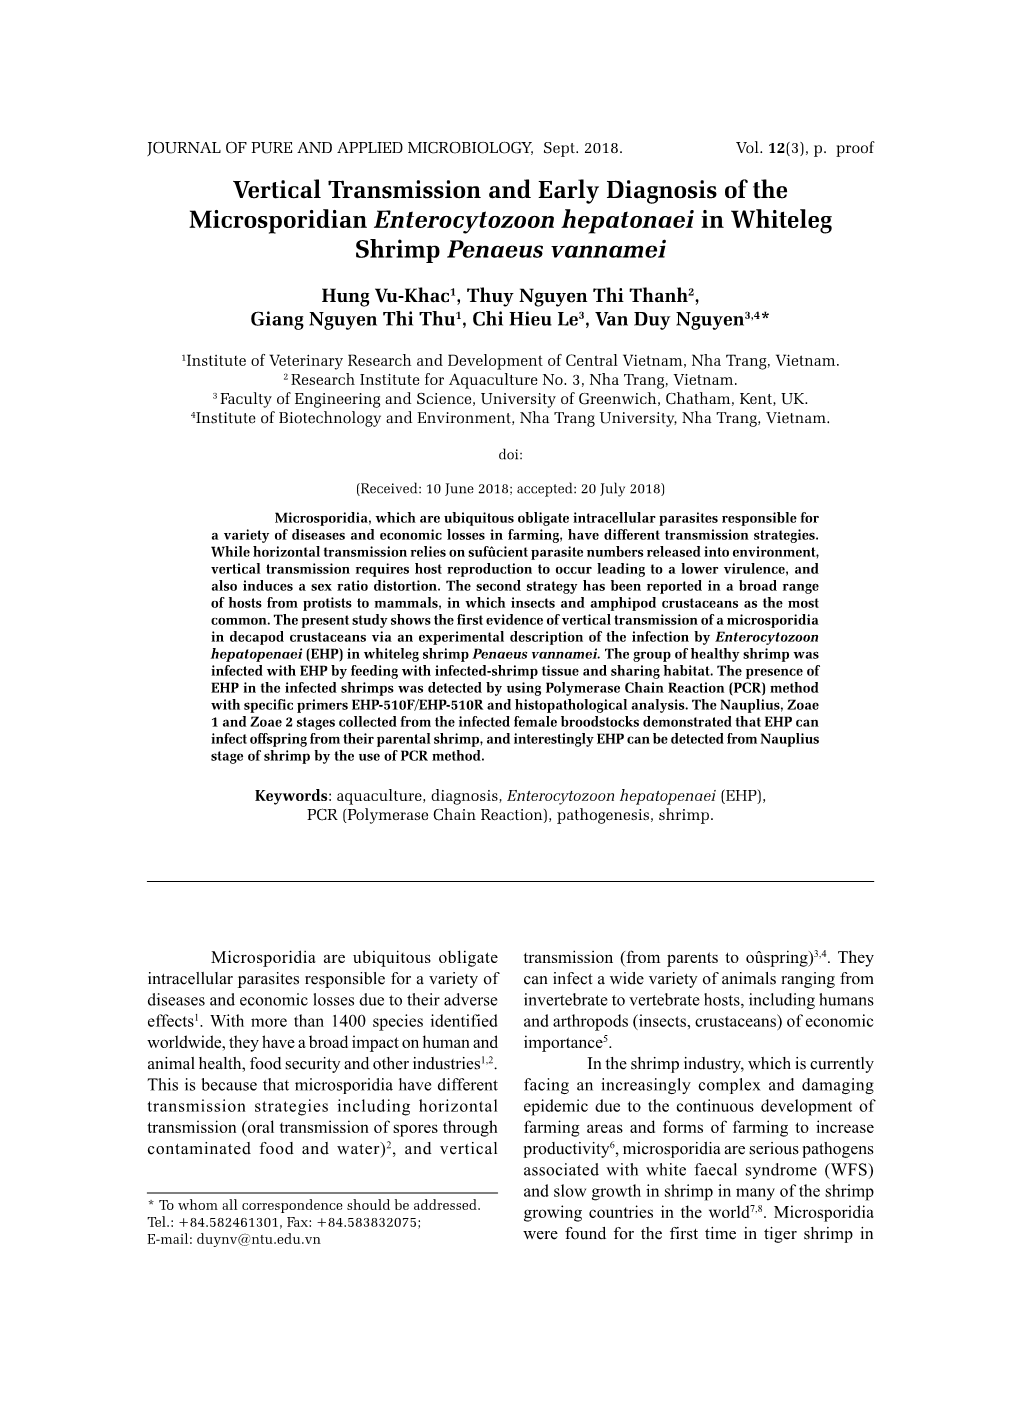 Vertical Transmission and Early Diagnosis of the Microsporidian Enterocytozoon Hepatonaei in Whiteleg Shrimp Penaeus Vannamei